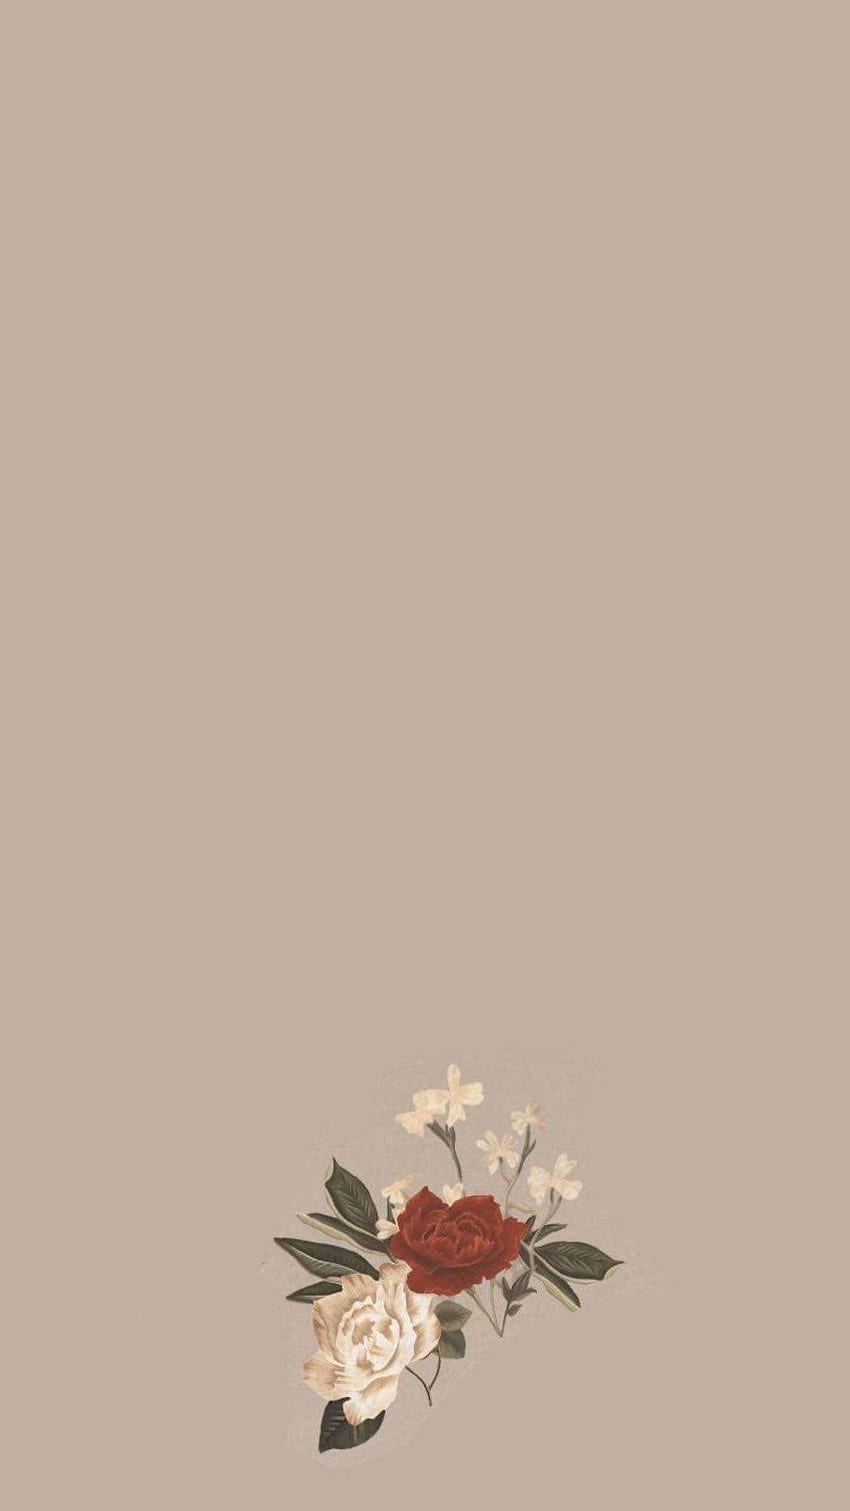  Instagram Hintergrundbild 850x1511. Aesthetic Instagram Android Background. Flower background, Instagram, Minimalist HD phone wallpaper